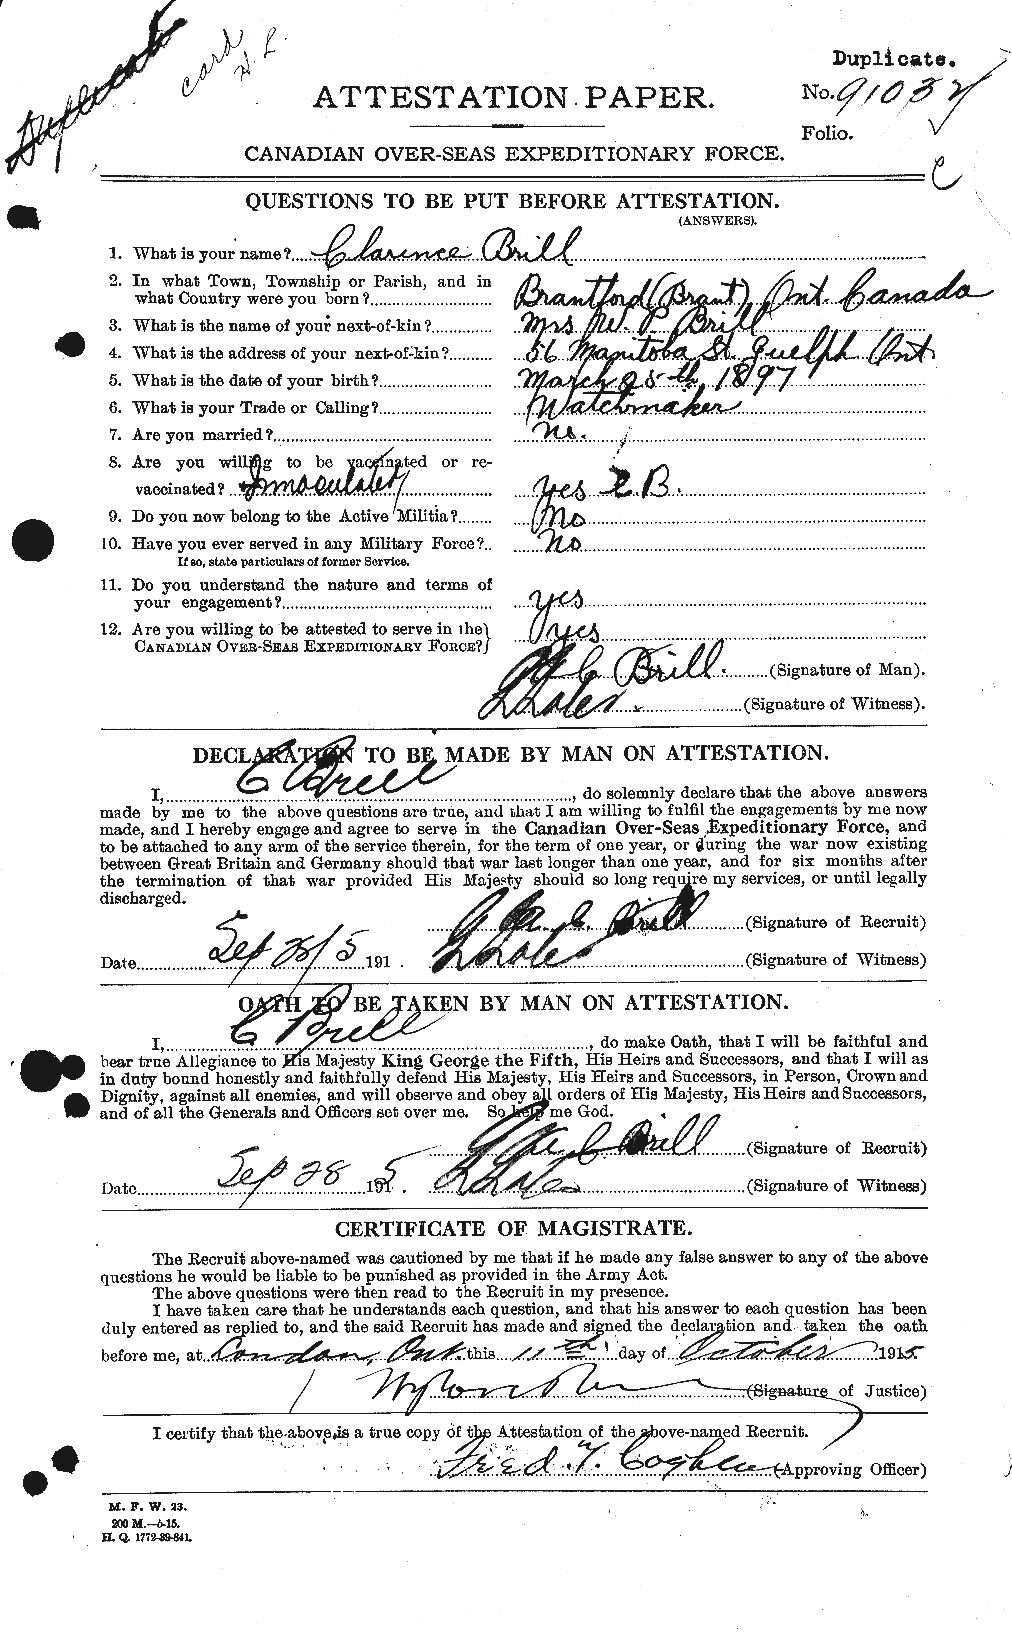 Dossiers du Personnel de la Première Guerre mondiale - CEC 265147a